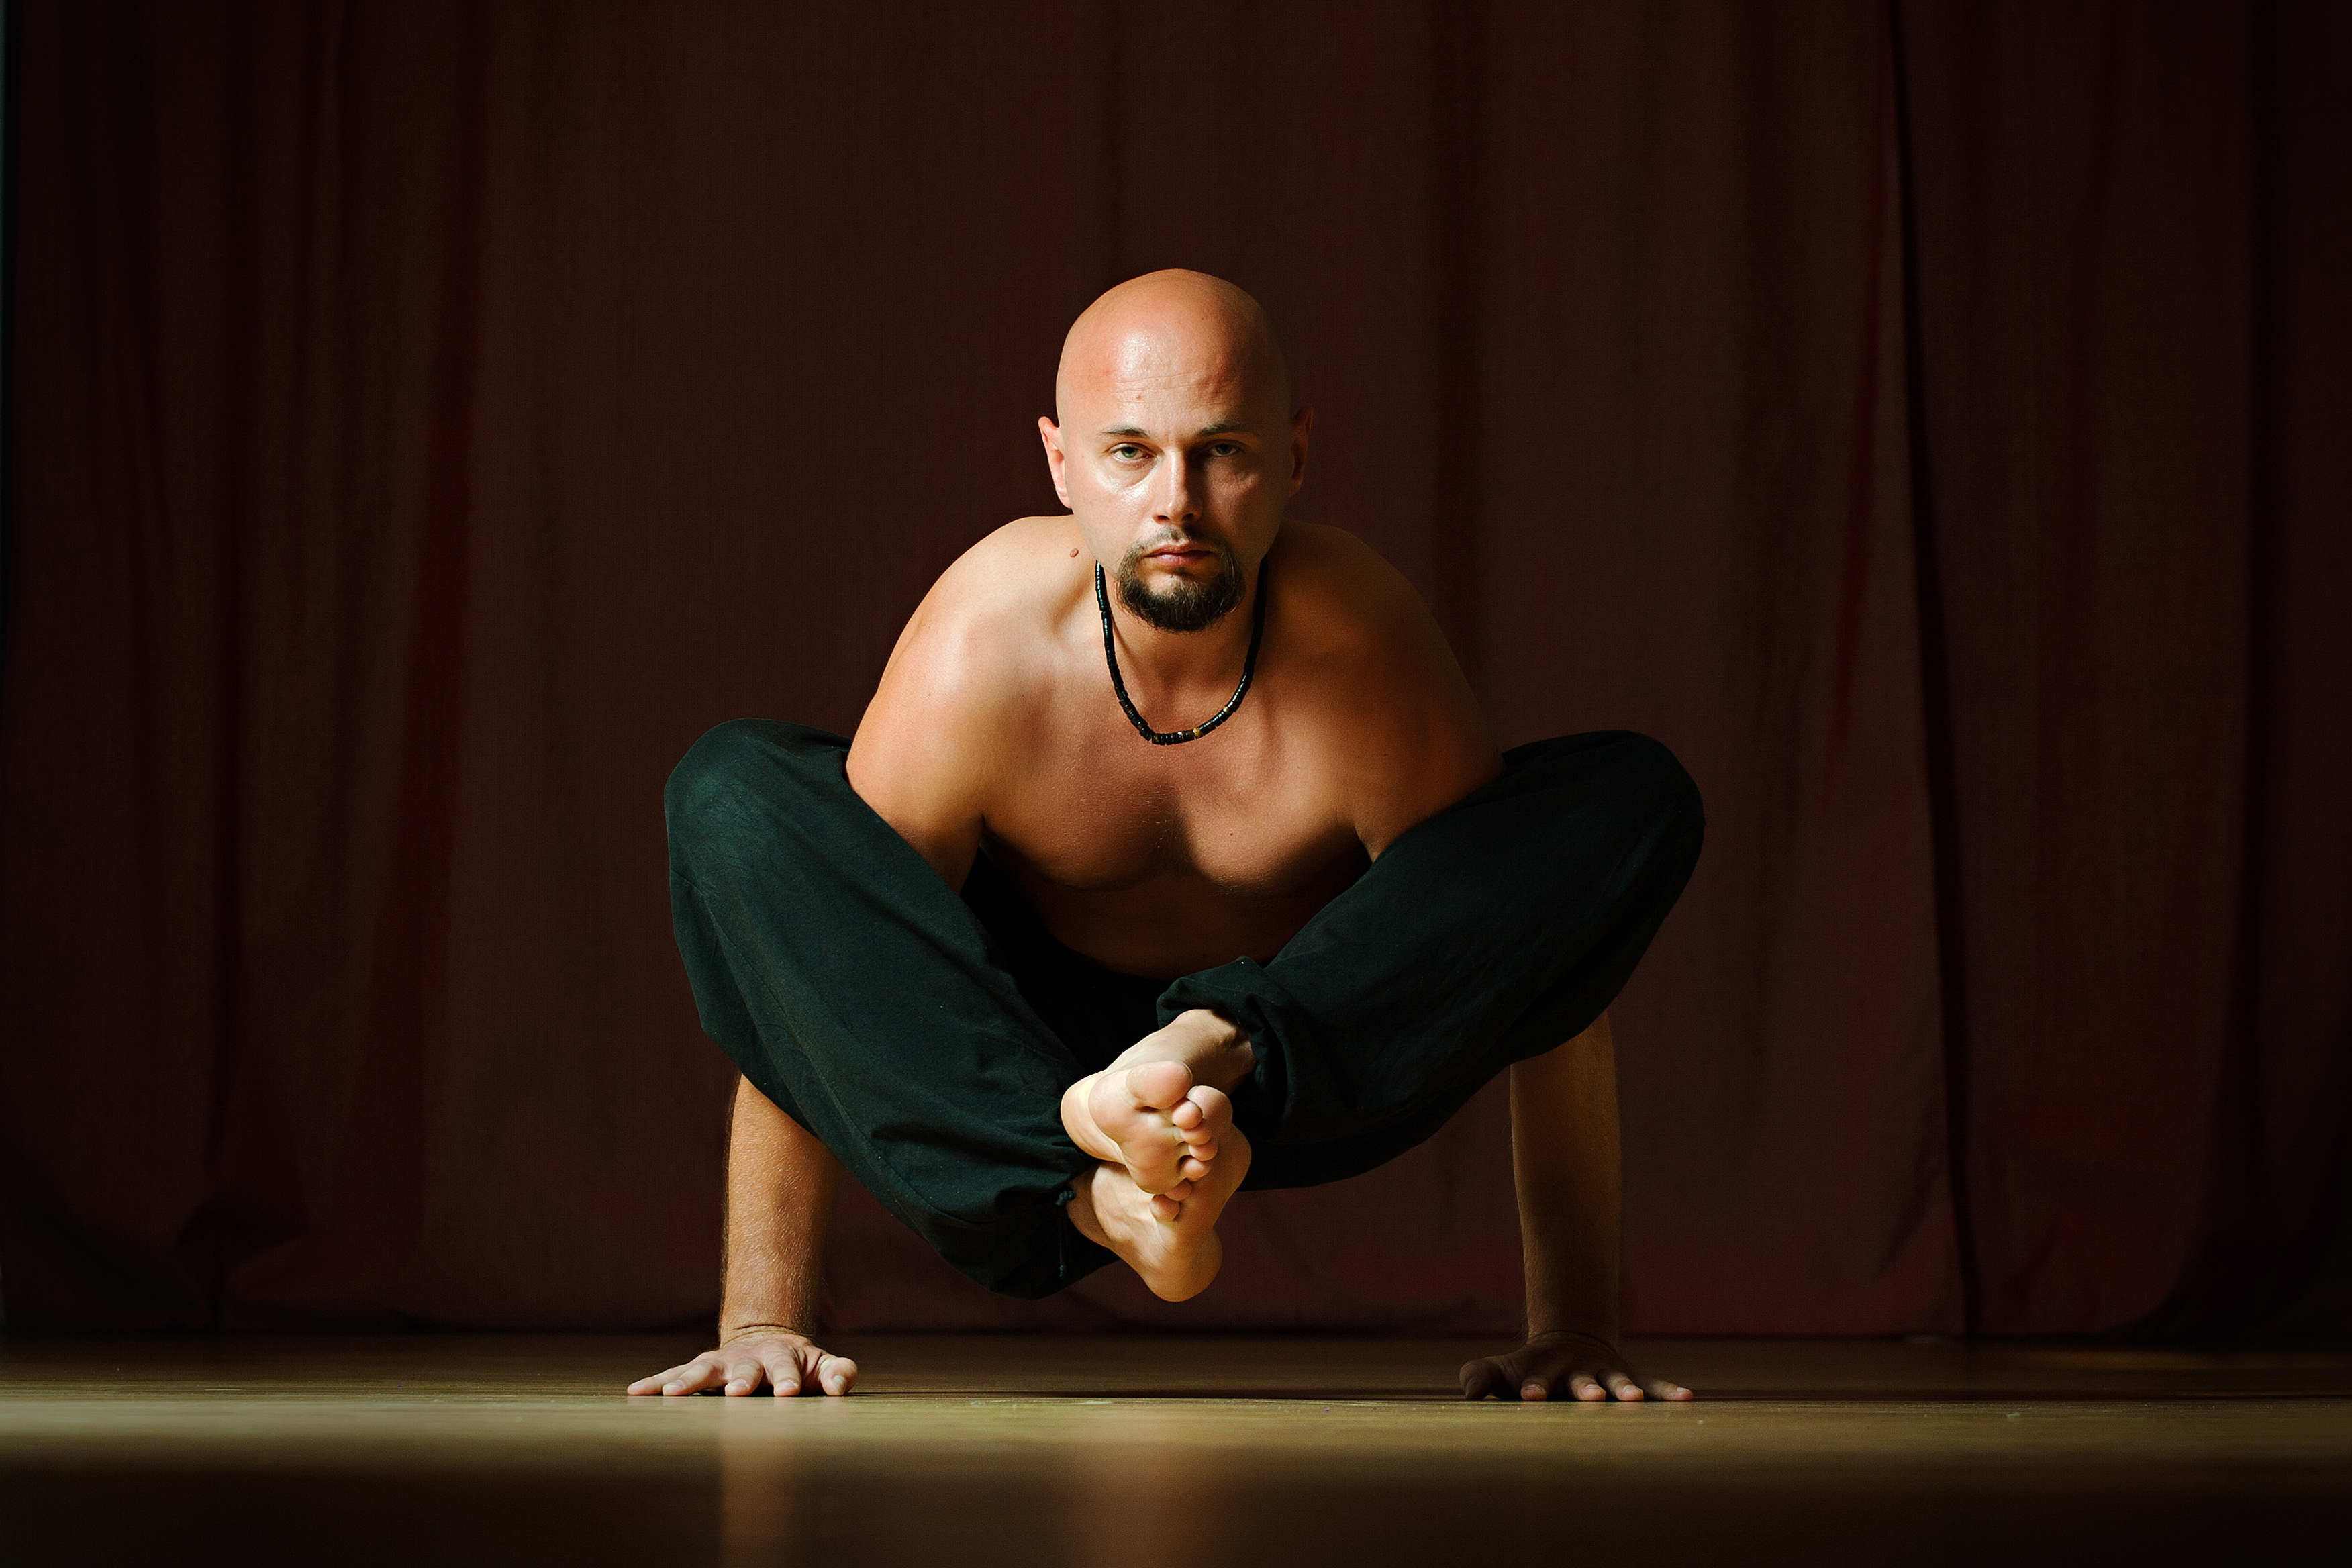 Anatoliy Pakhomov the founder of Vajra yoga Kiev